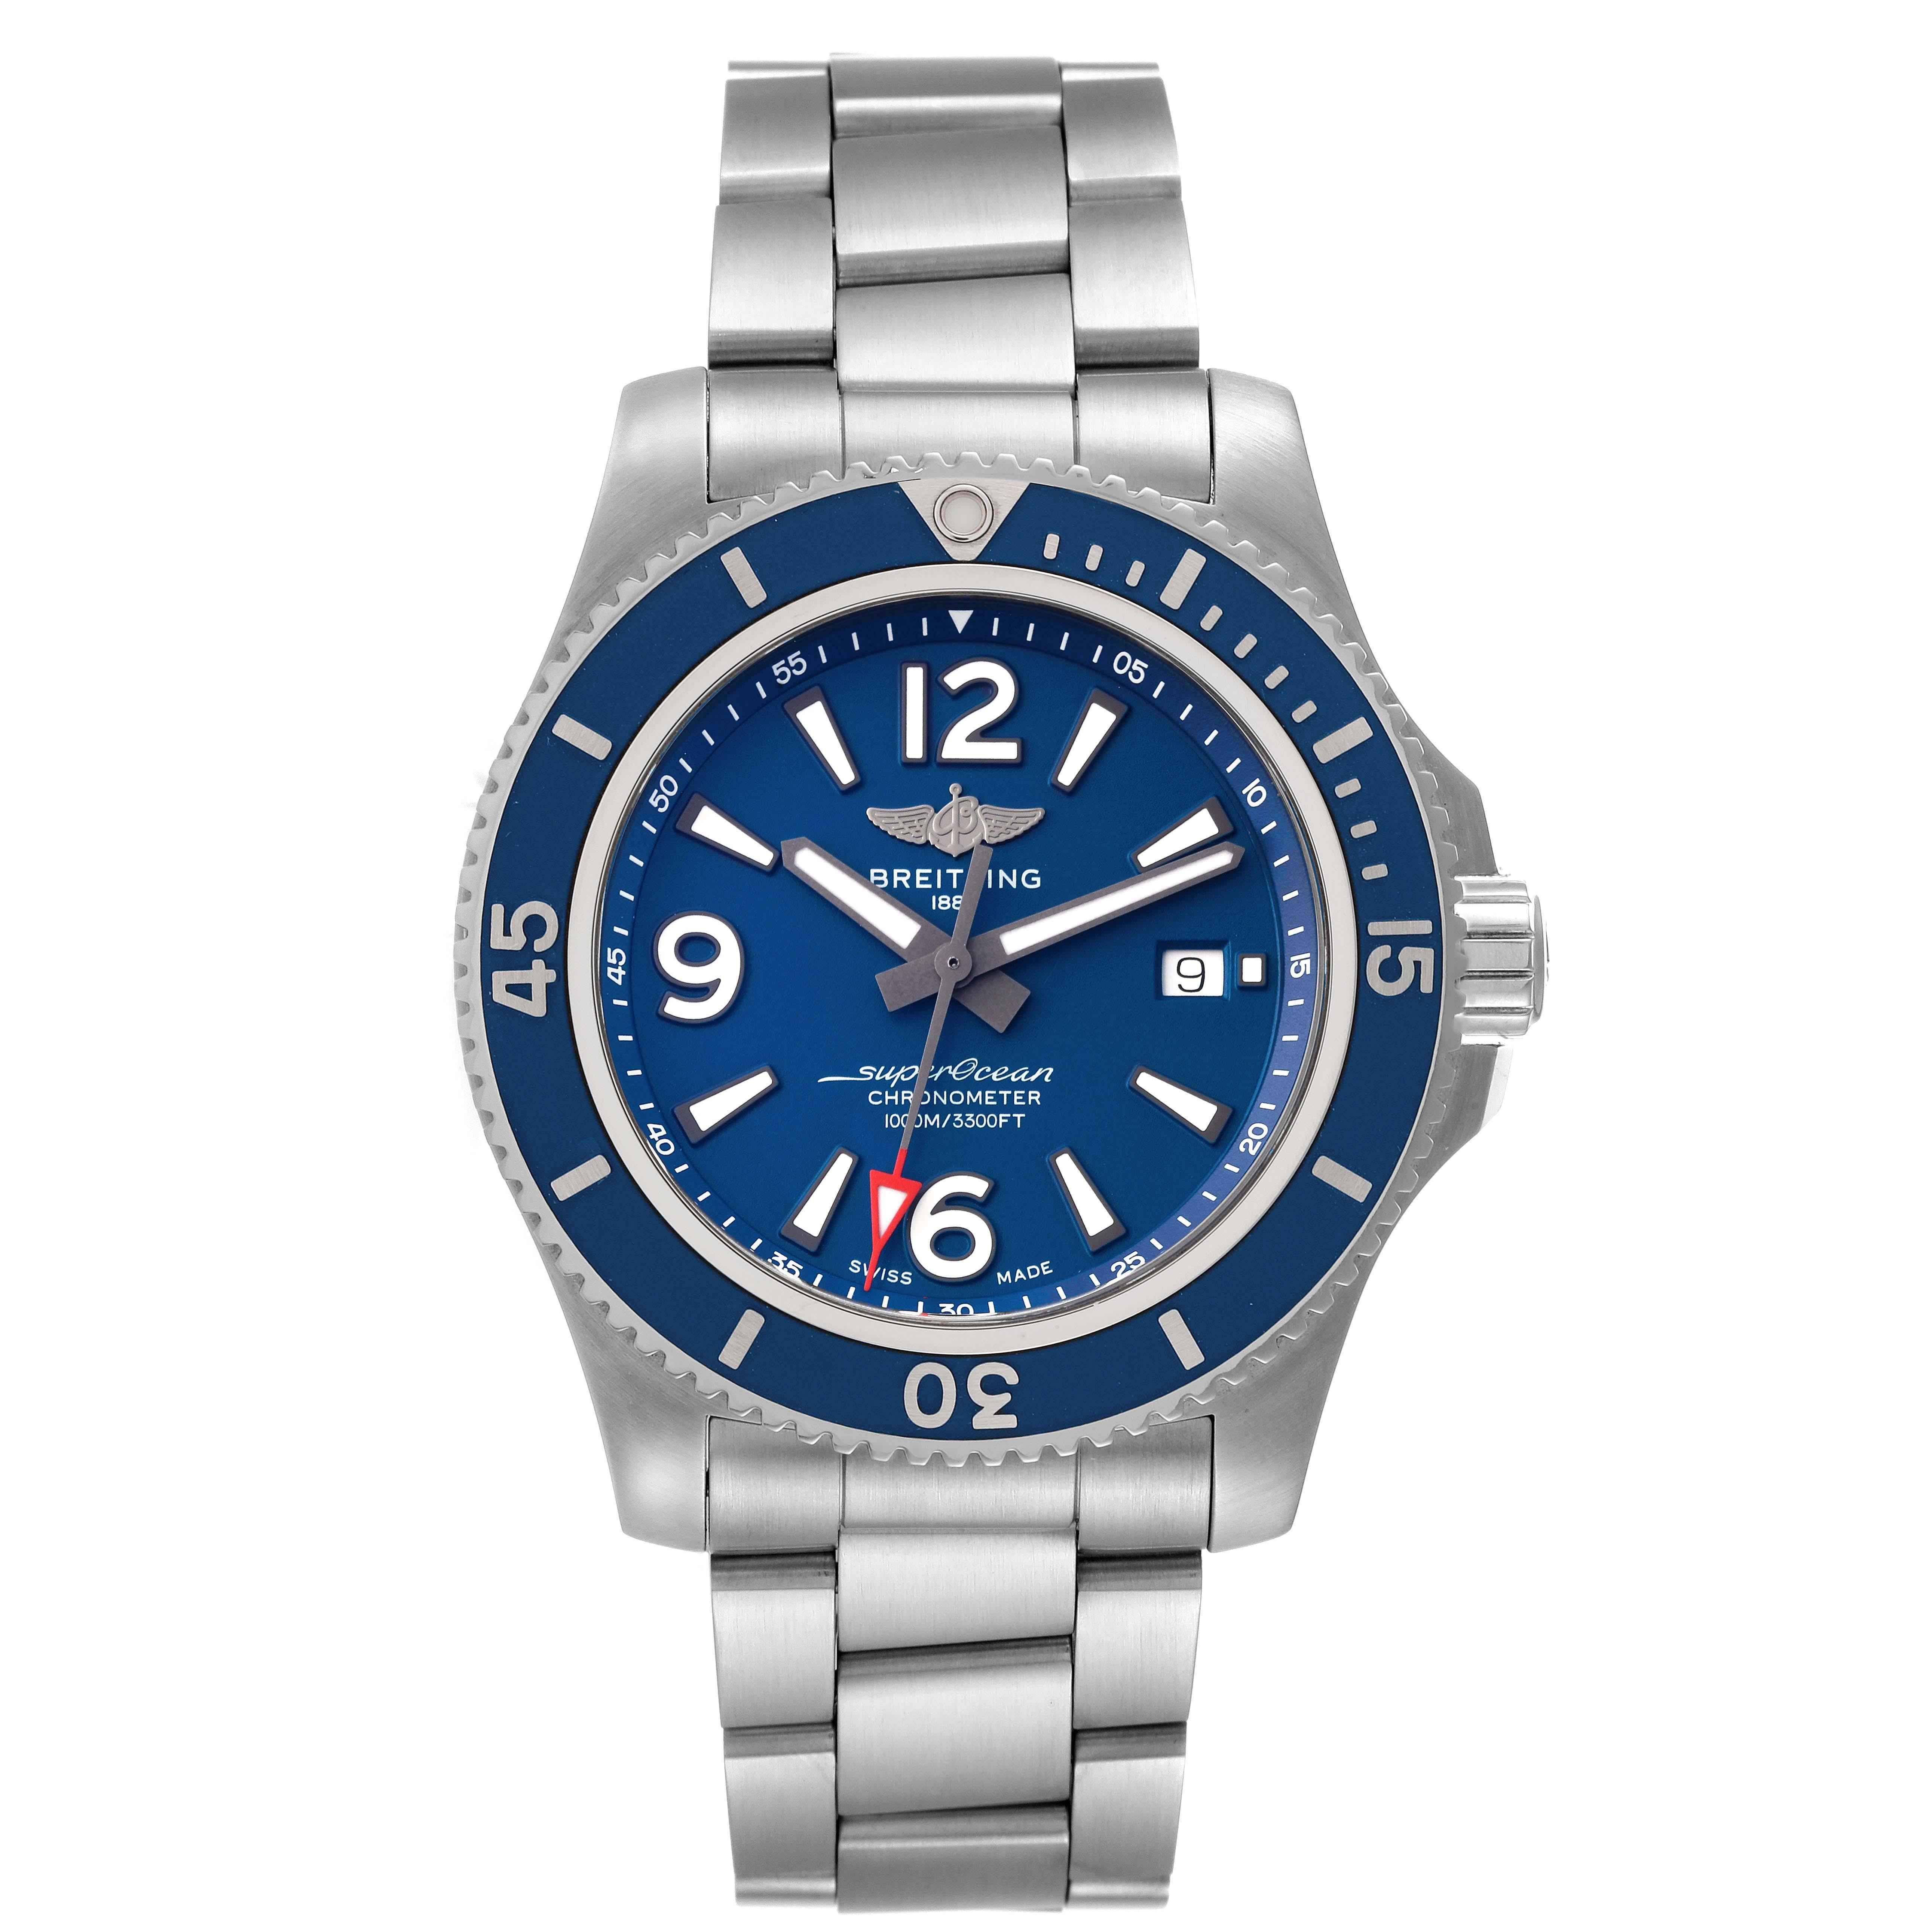 Breitling Superocean II Blau Zifferblatt Stahl Herrenuhr A17367. Automatisches Uhrwerk mit Selbstaufzug. Gehäuse aus Edelstahl mit einem Durchmesser von 44 mm. Verschraubte Krone und Drücker aus Edelstahl. Blaue, einseitig drehbare Lünette. 0-60